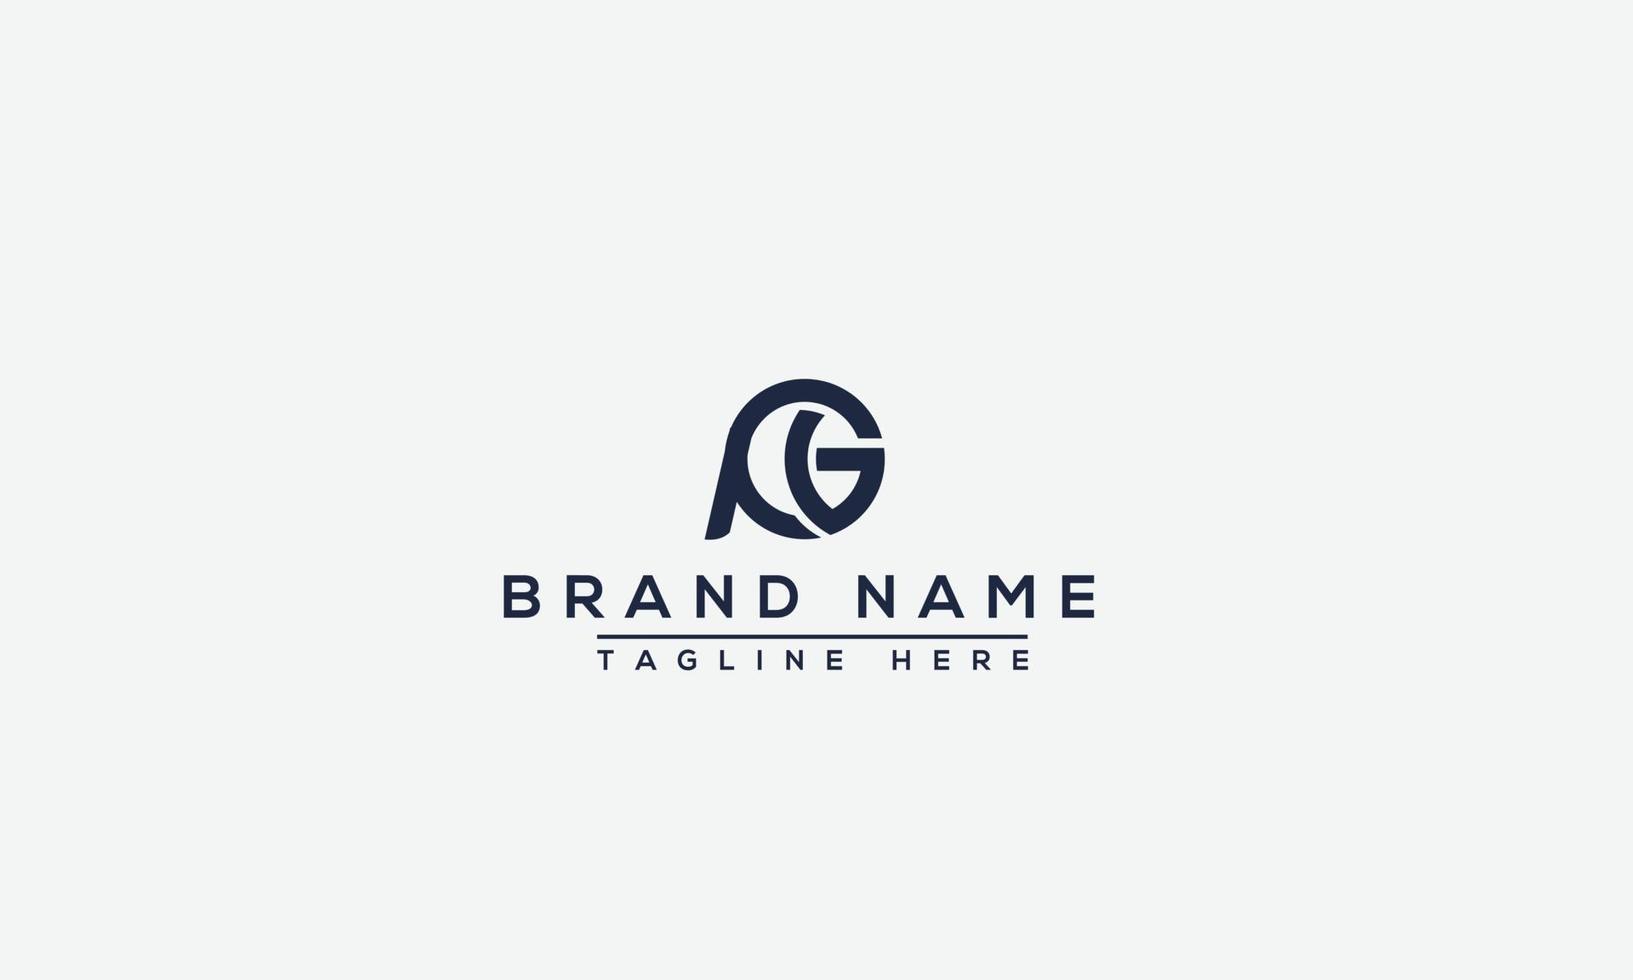 elemento de branding gráfico de vetor de modelo de design de logotipo pg.